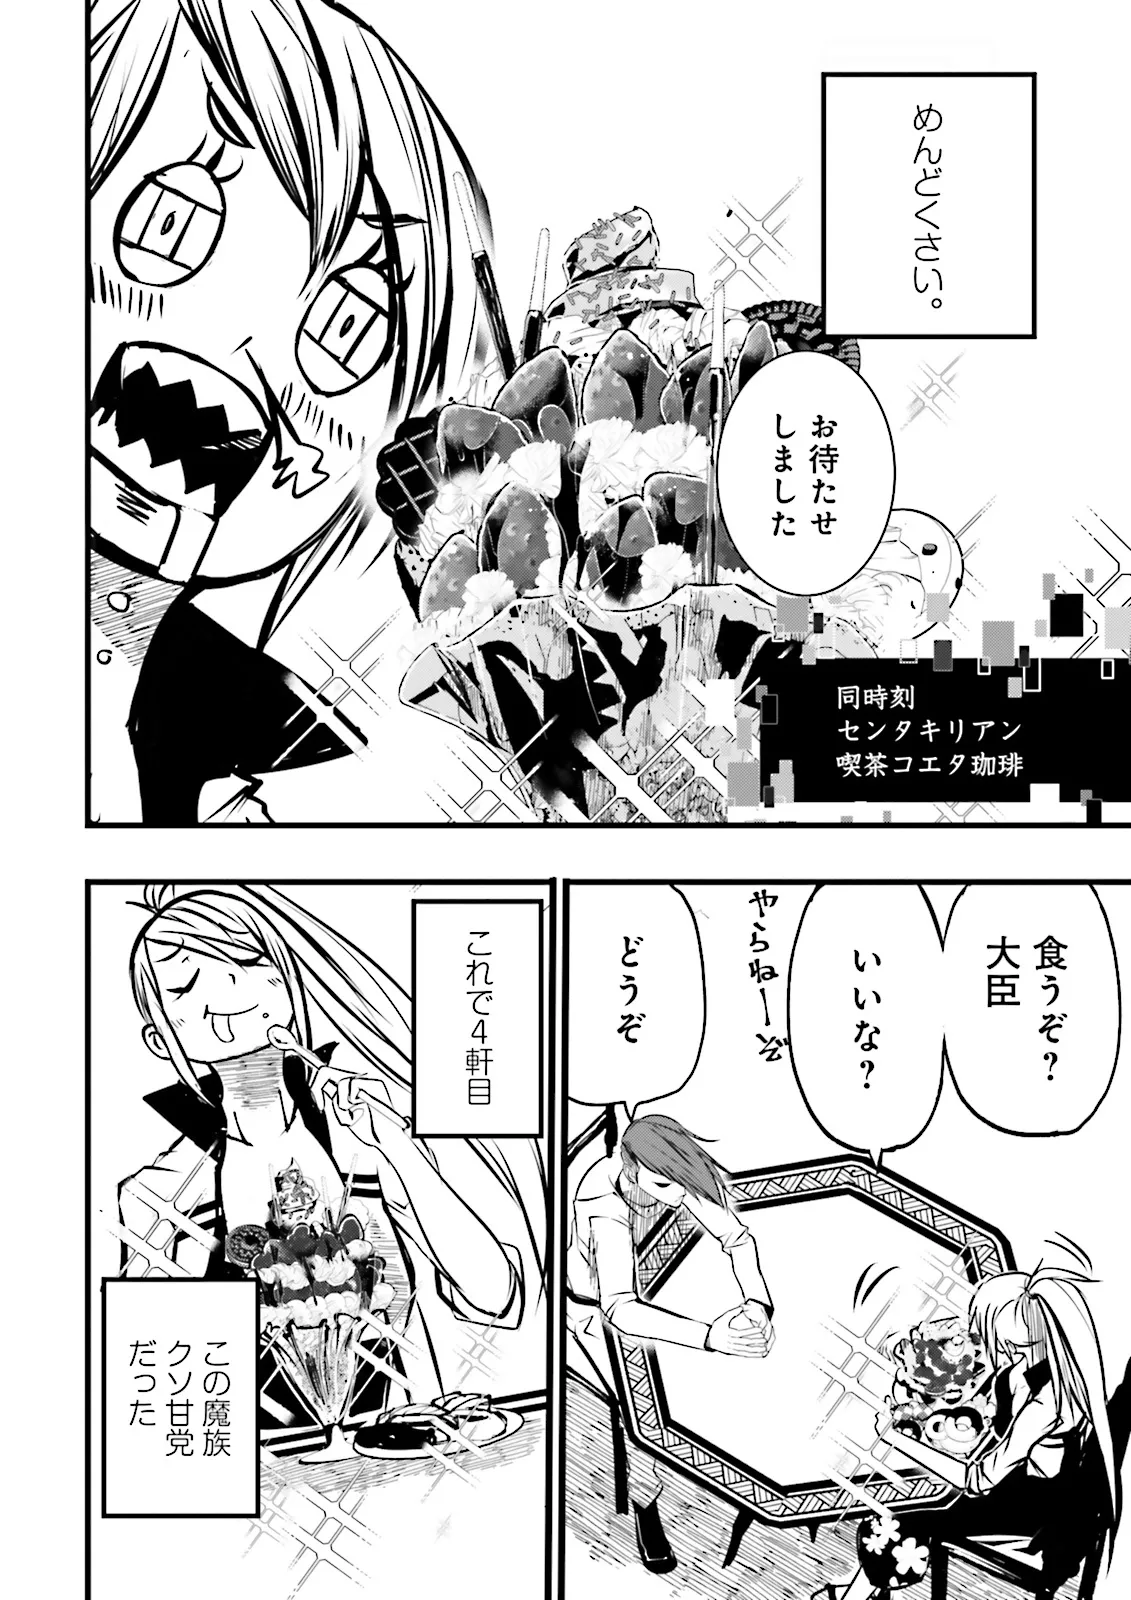 Sukiru Ga Nakereba Level wo Ageru ~ 99 Ga Kansuto No Sekai De Reberu 800 Man Kara Sutato ~ - Chapter 39.3 - Page 10